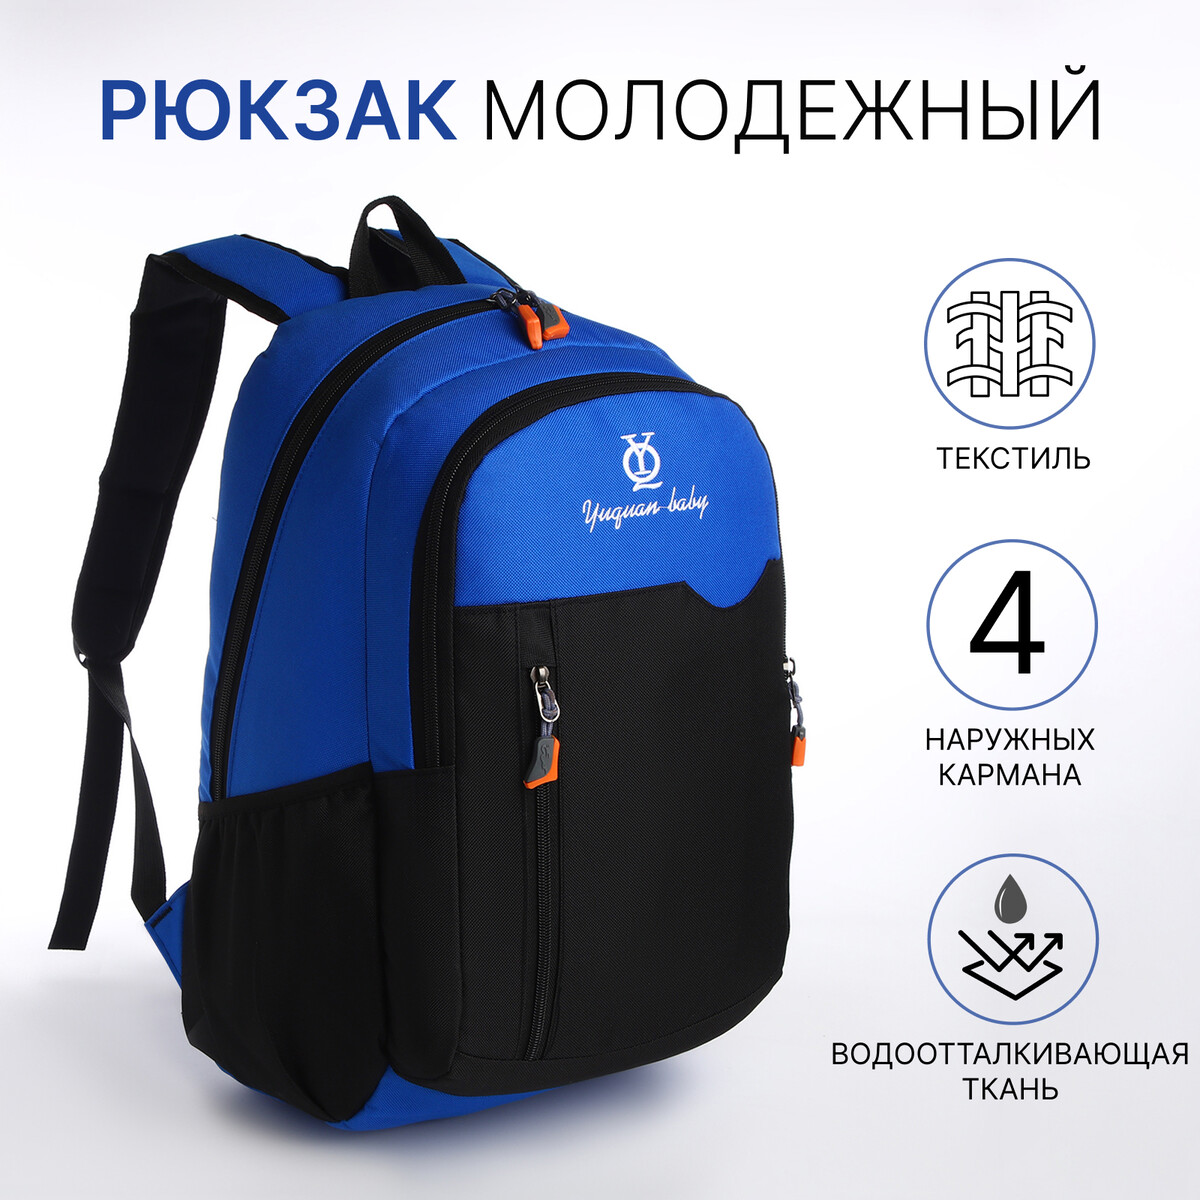 Рюкзак школьный, 2 отдела на молнии, 3 кармана, цвет черный/синий рюкзак молодежный из текстиля 2 отдела на молнии 3 кармана синий